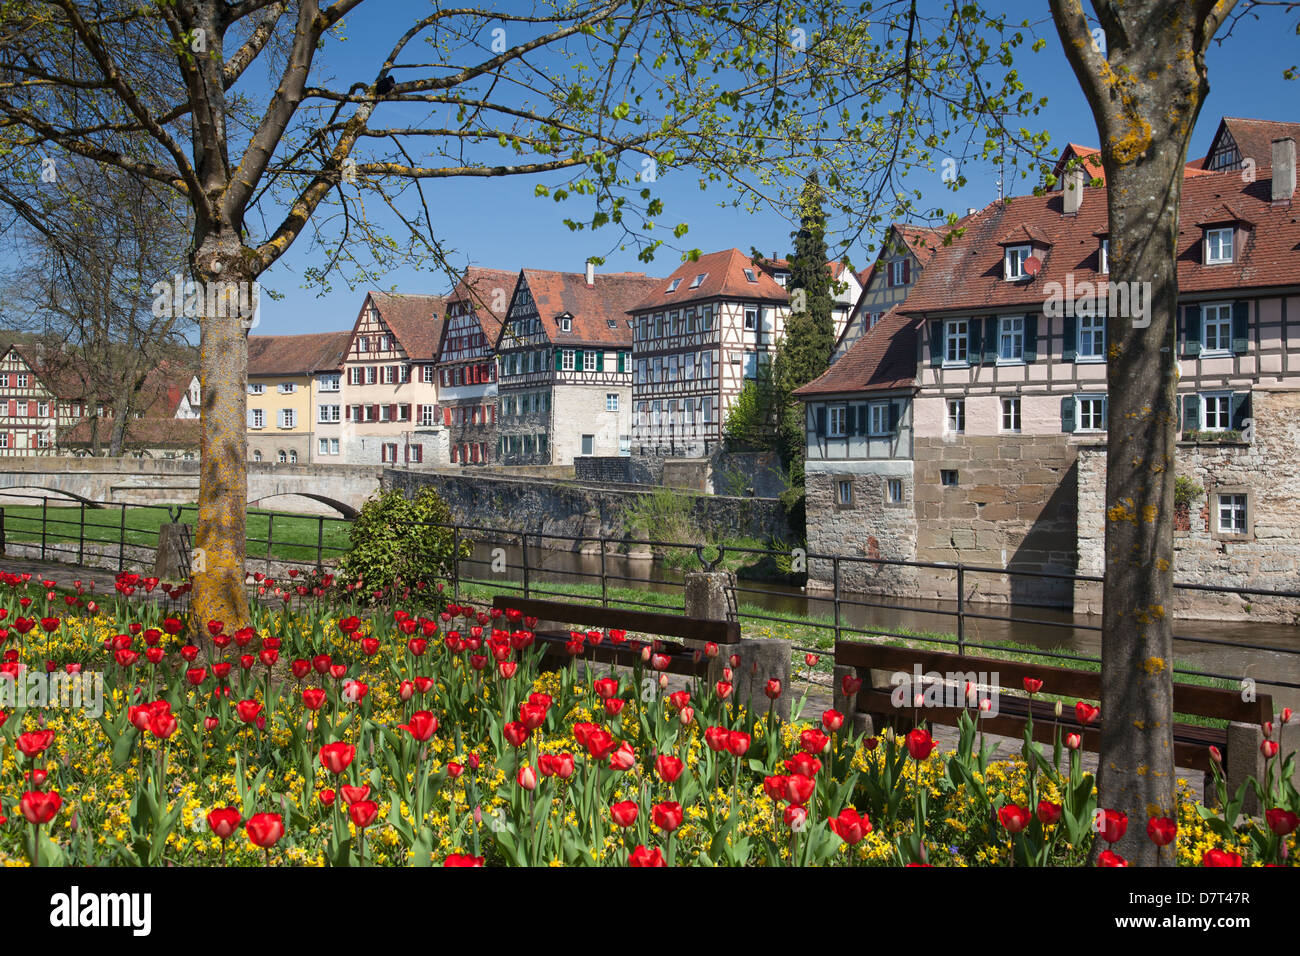 La cité médiévale de la ville allemande de Schwaebisch Hall avec une couche de fleurs en premier plan Banque D'Images